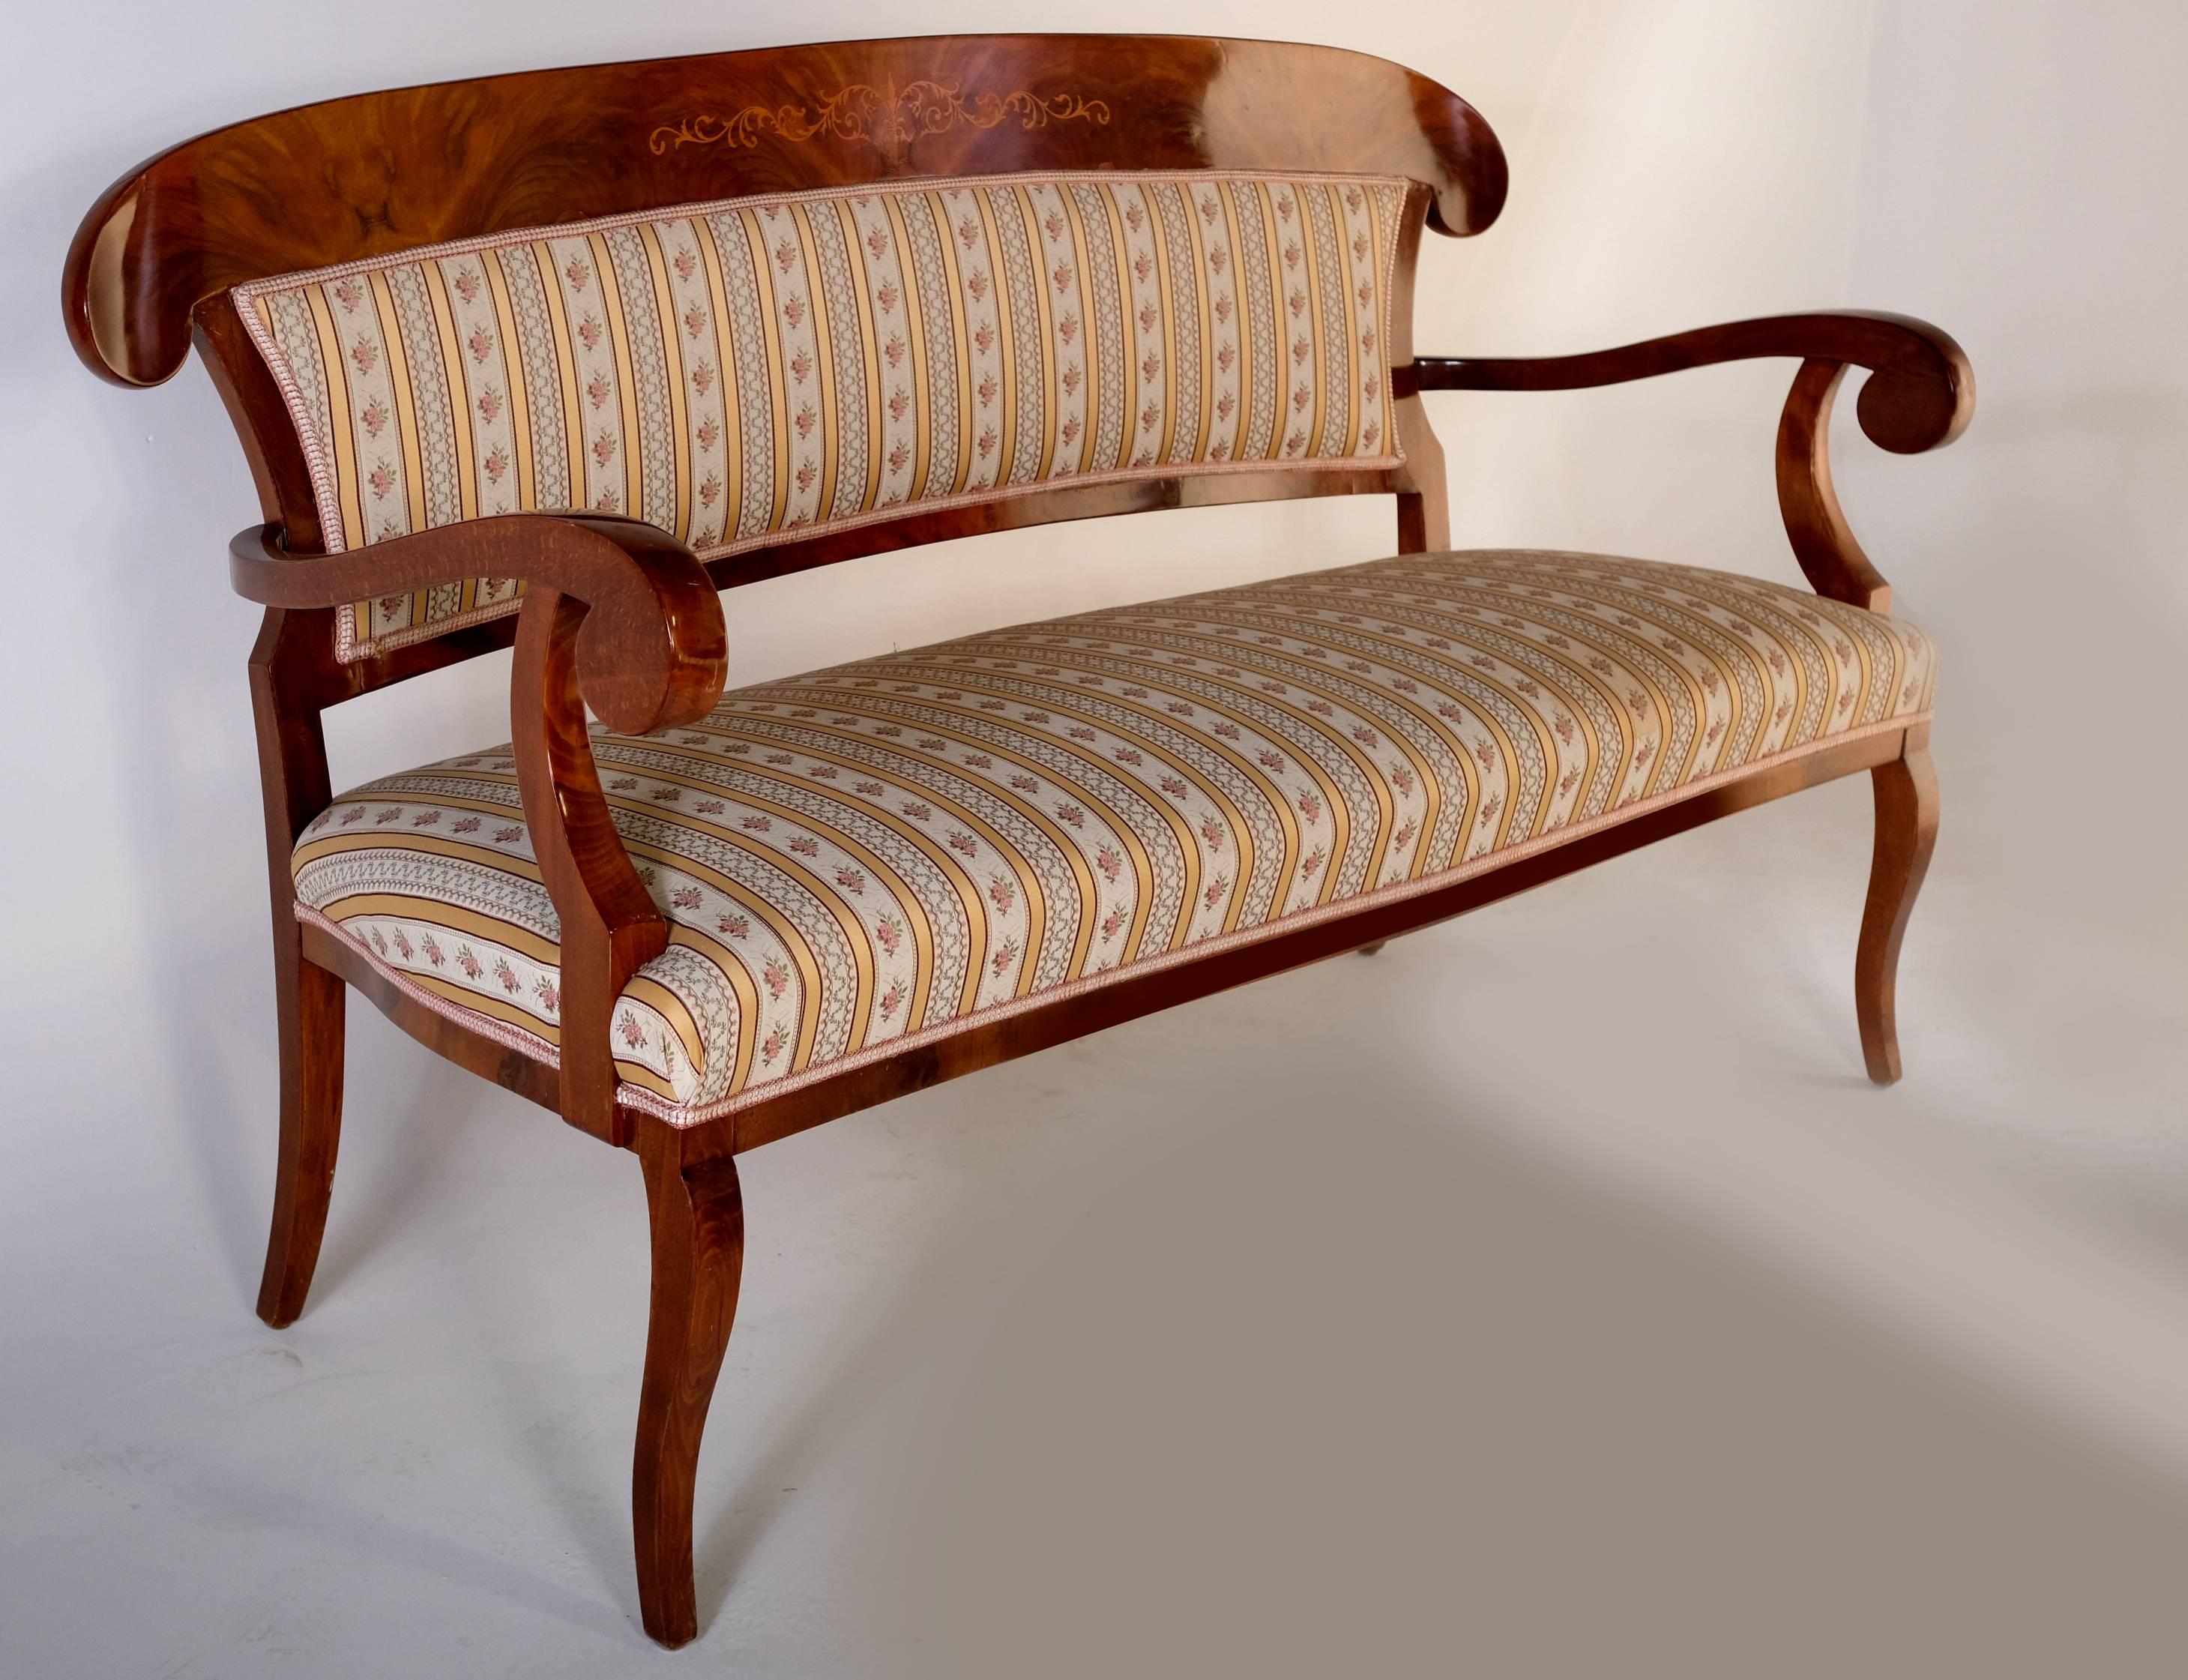 Elegantes Set bestehend aus einem Sofa und zwei Sesseln im Biedermeier-Stil. Raffinierte Schnitzereien auf der Rückseite.